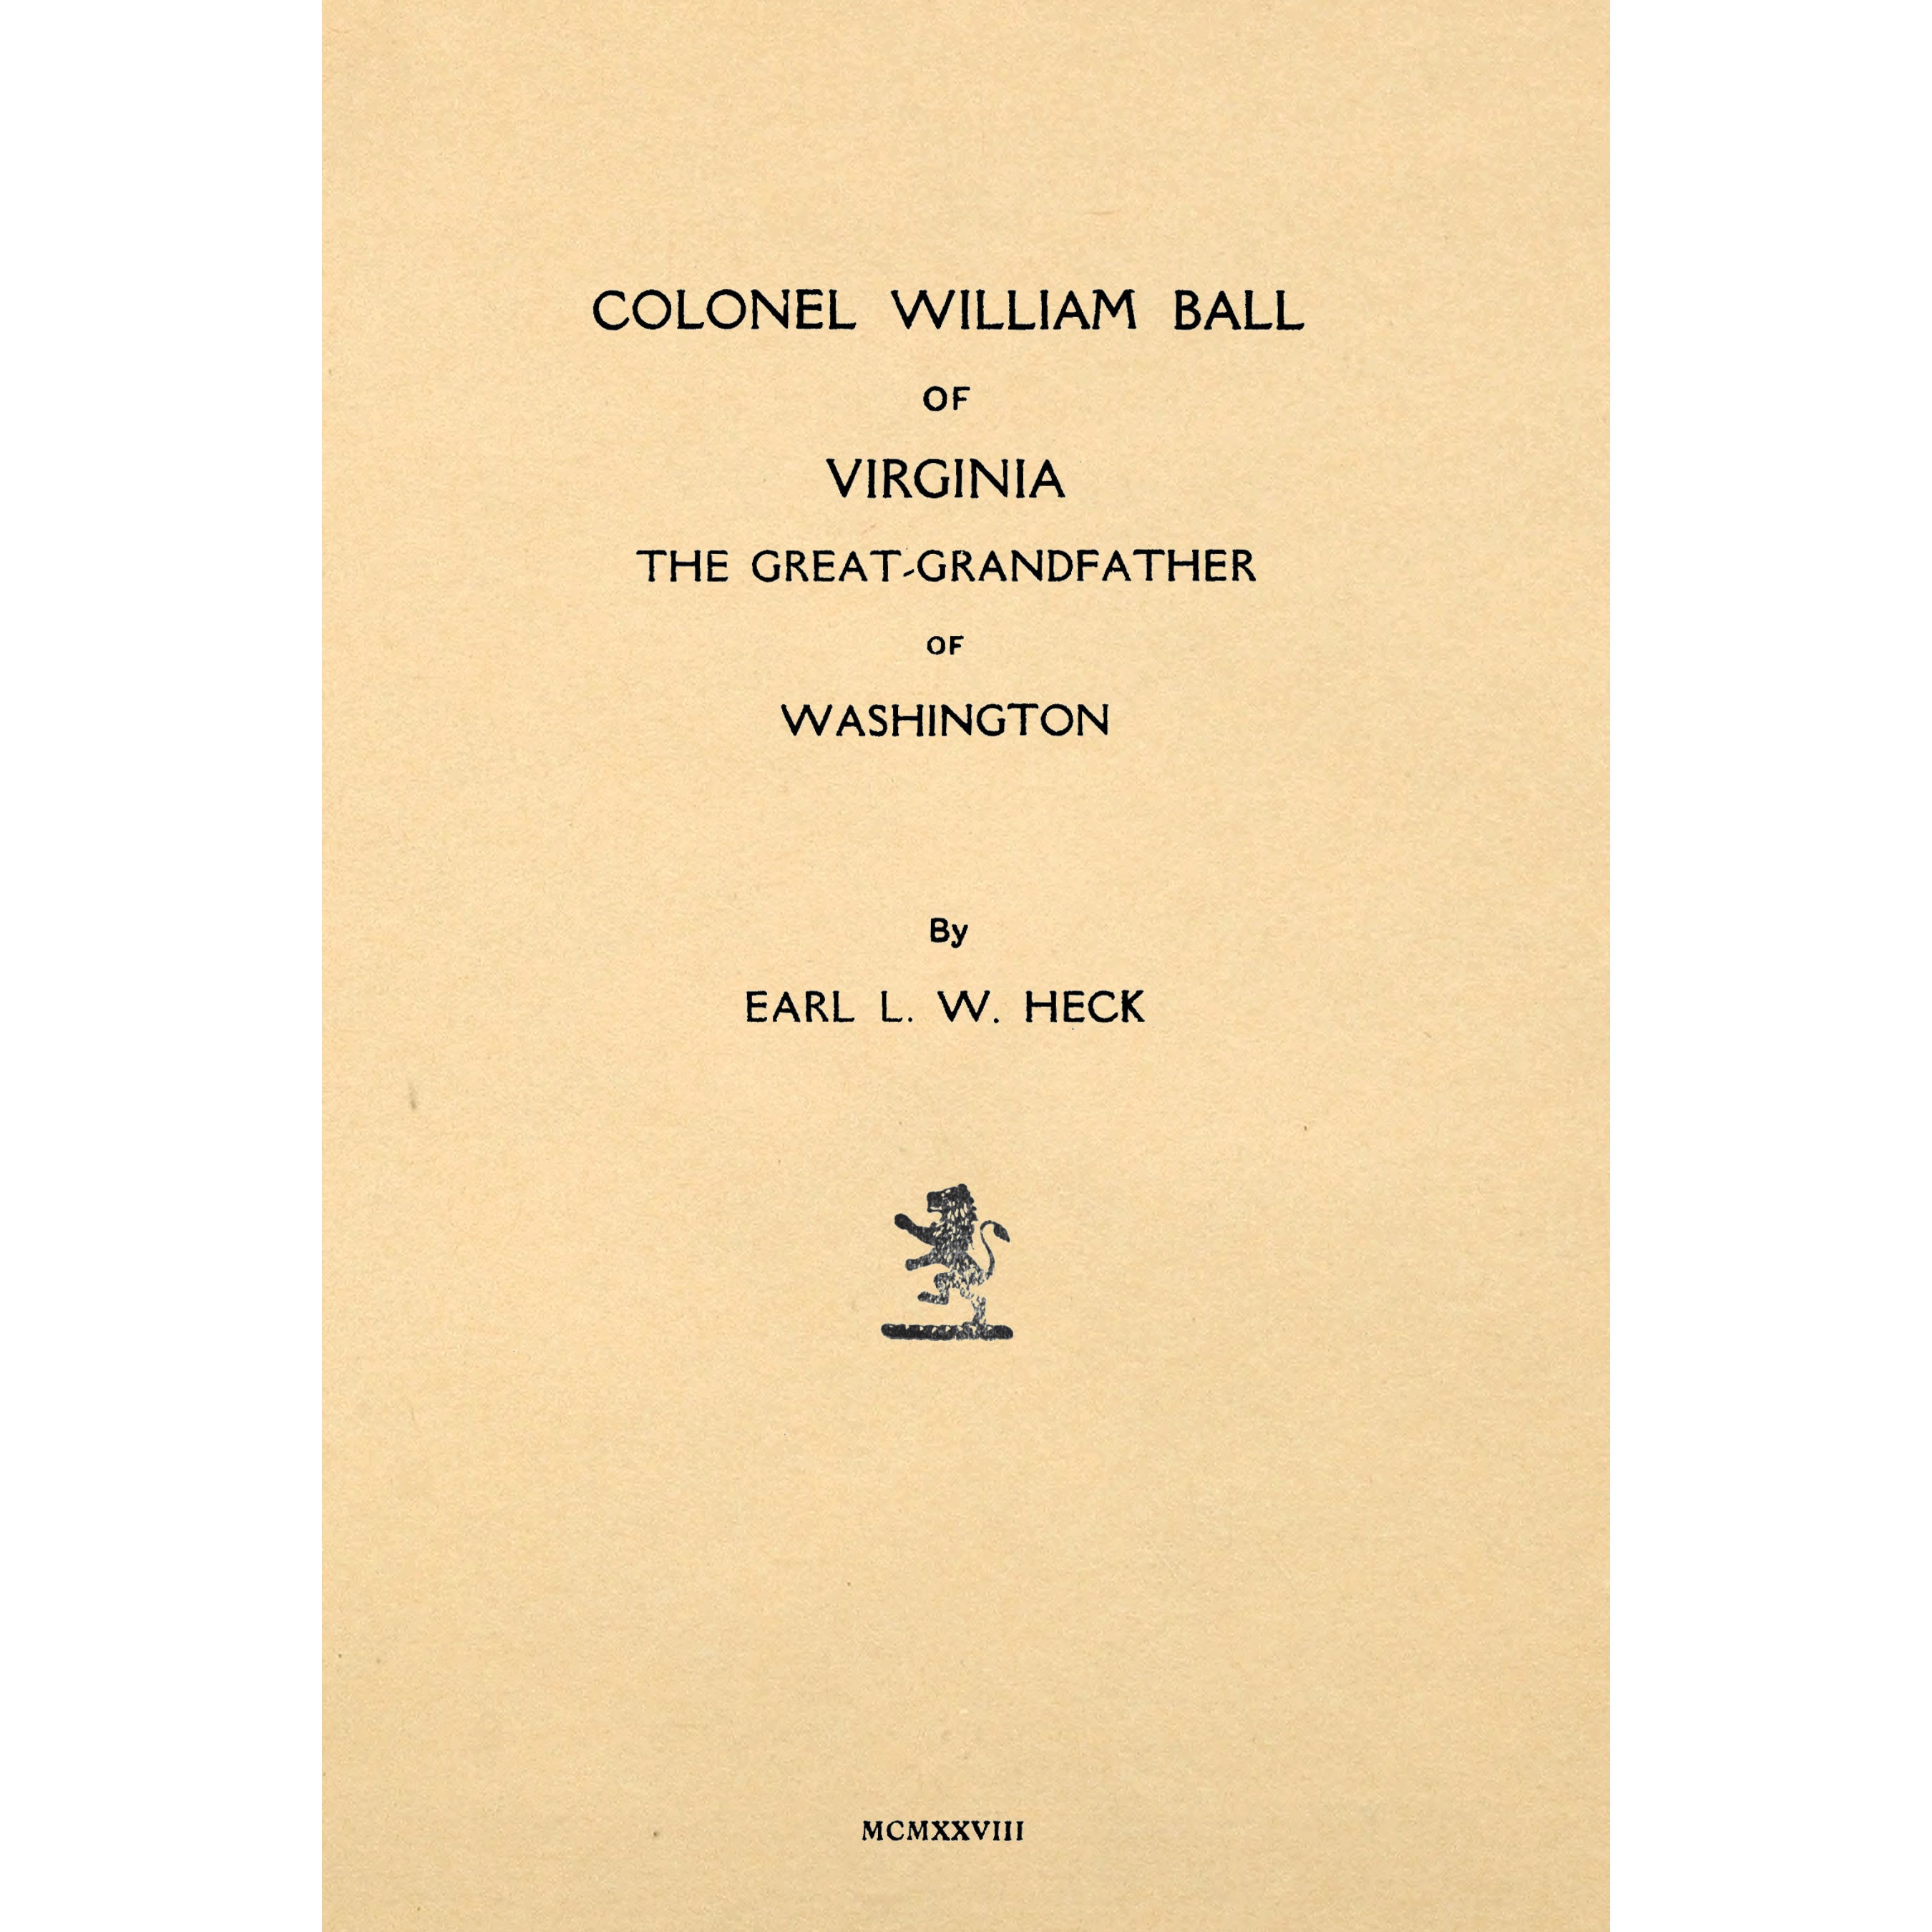 Colonel William Ball of Virginia,